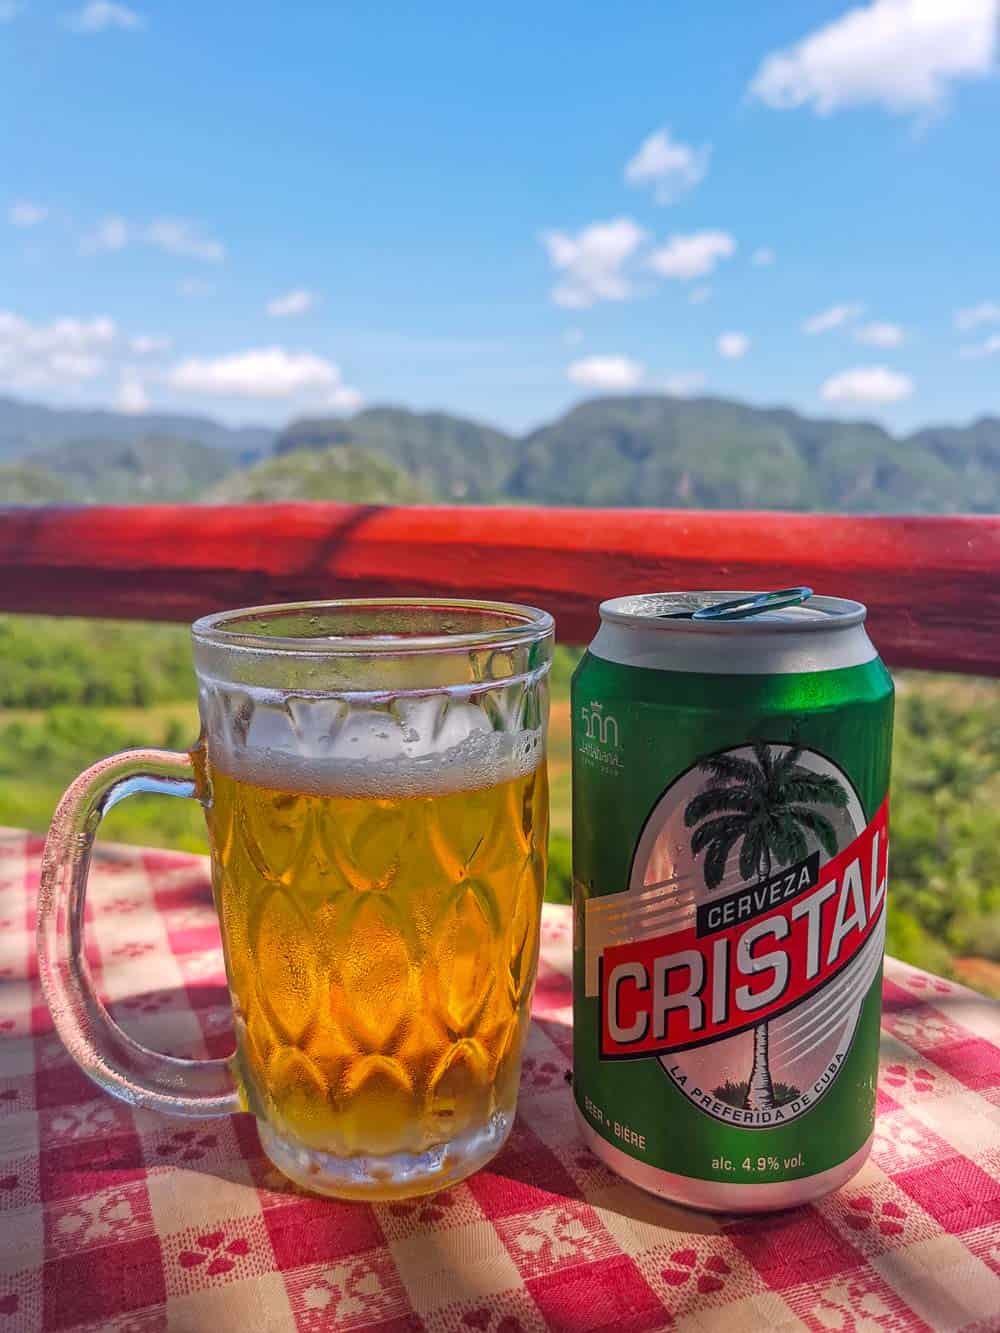 Cristal beer in Cuba